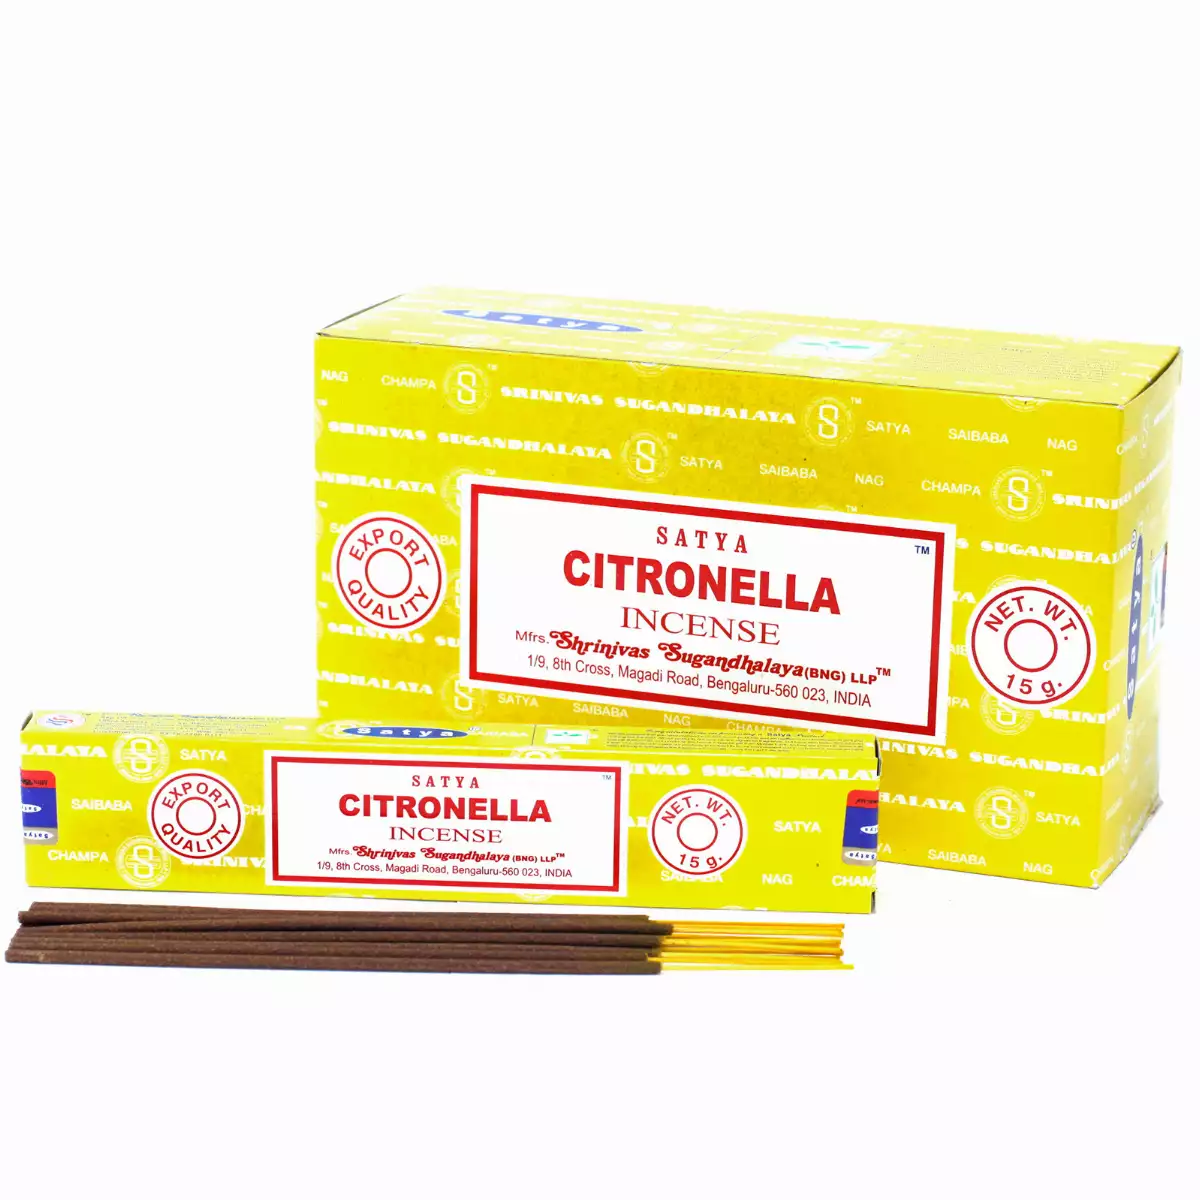 Encens SATYA 15g - Citronella